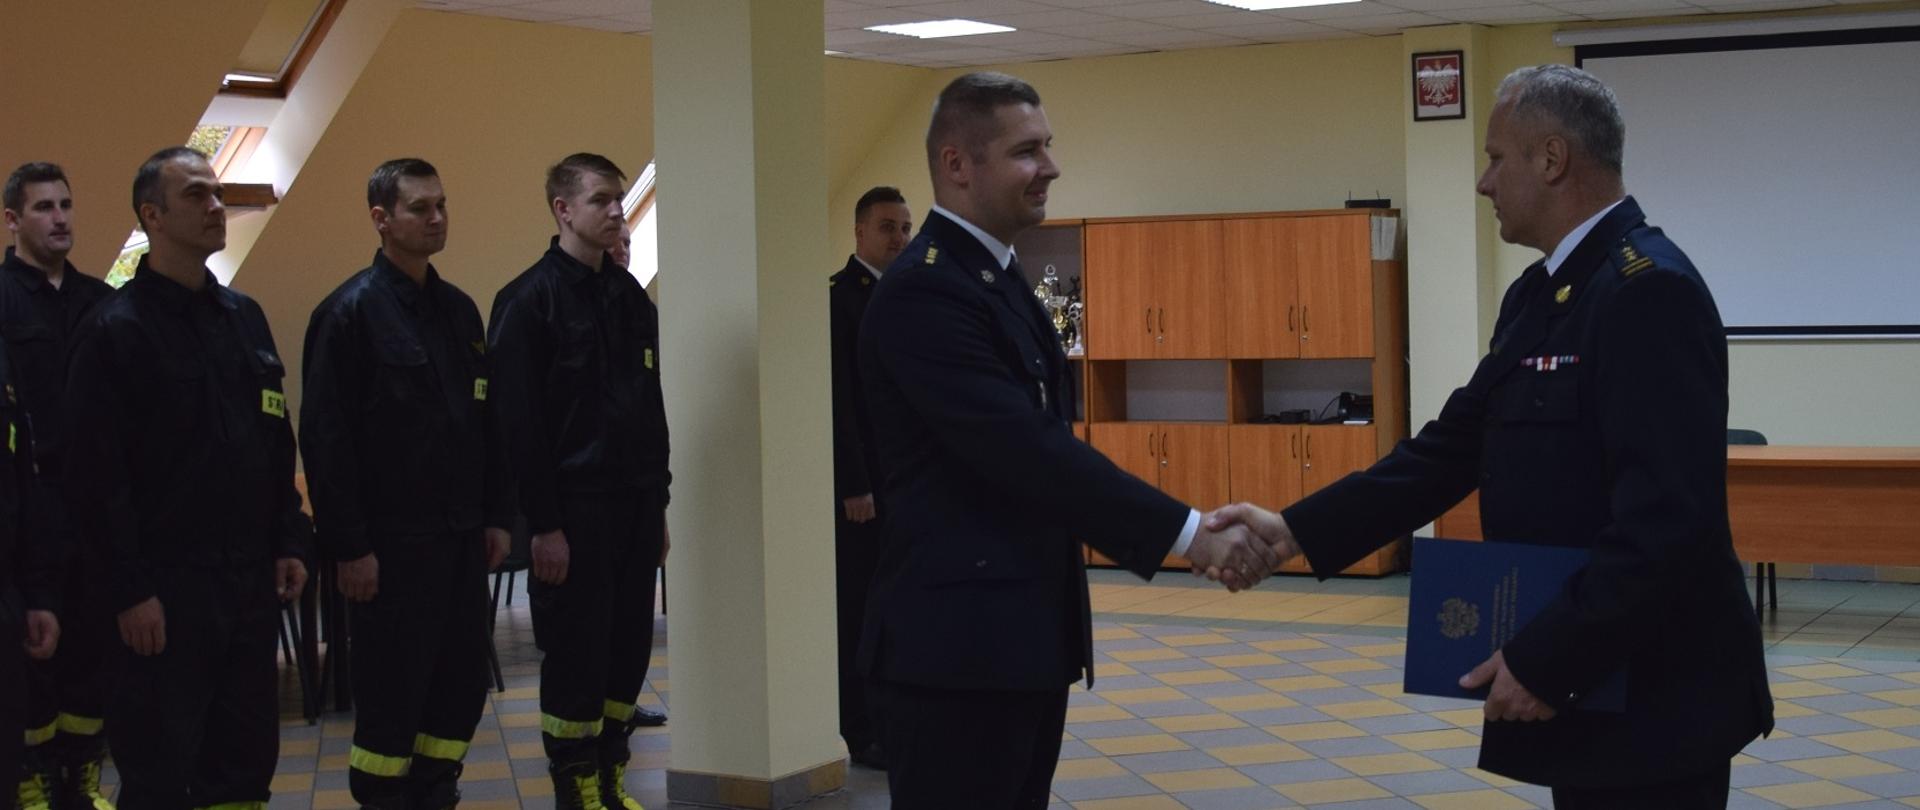 Na zdjęciu widać zastępcę kujawsko-pomorskiego komendanta wojewódzkiego PSP, wręczającego wyróżnienie strażakowi. W tle w dwuszeregu stoją strażacy.